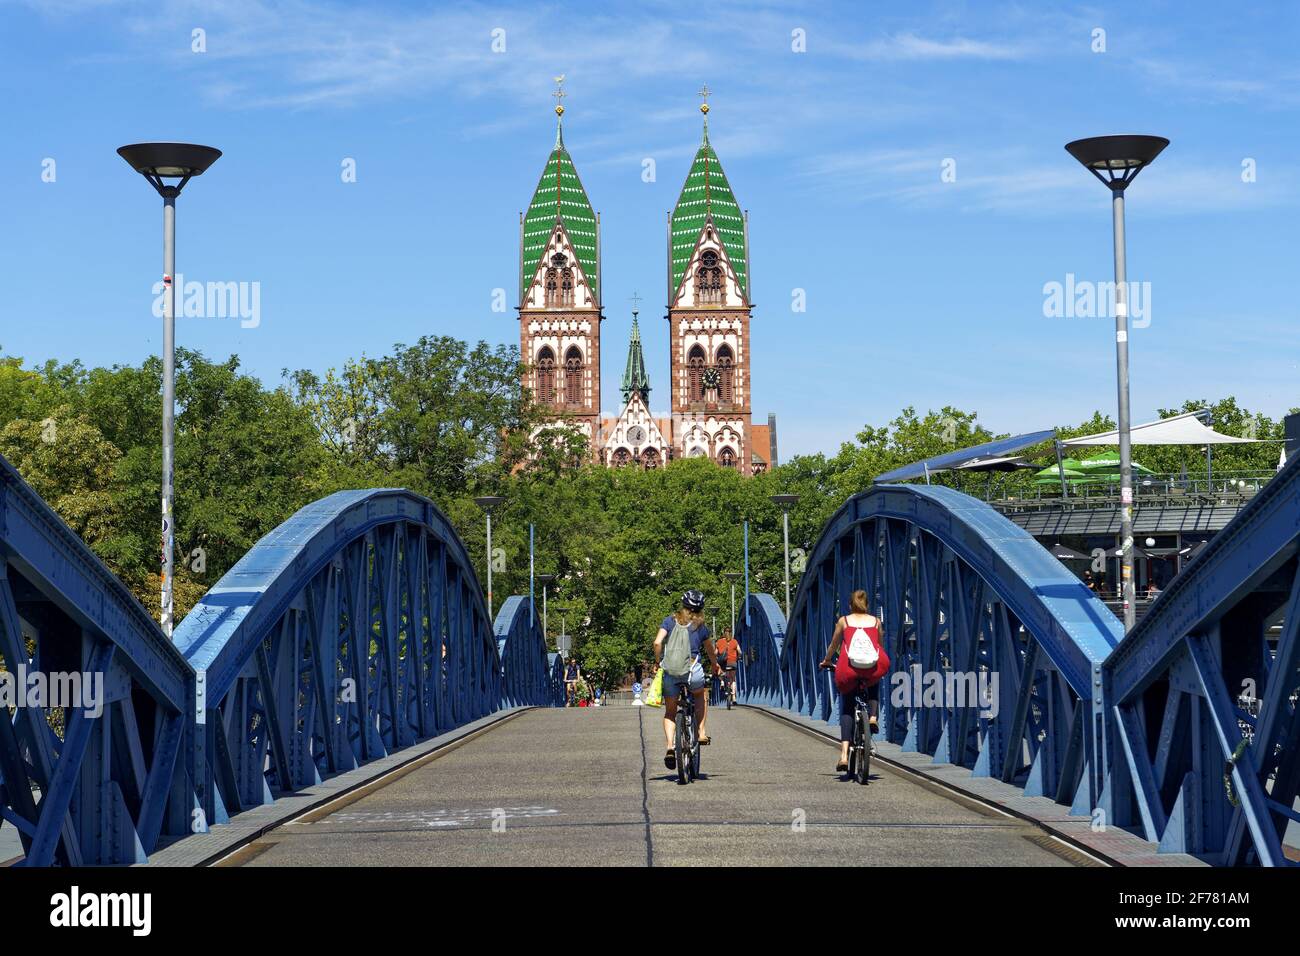 Germania, Baden Wurttemberg, Freiburg im Breisgau, ciclista sul ponte blu (ponte wilwili) e il Sacro cuore della Chiesa di Gesù (Herz Jesu kirche) Foto Stock